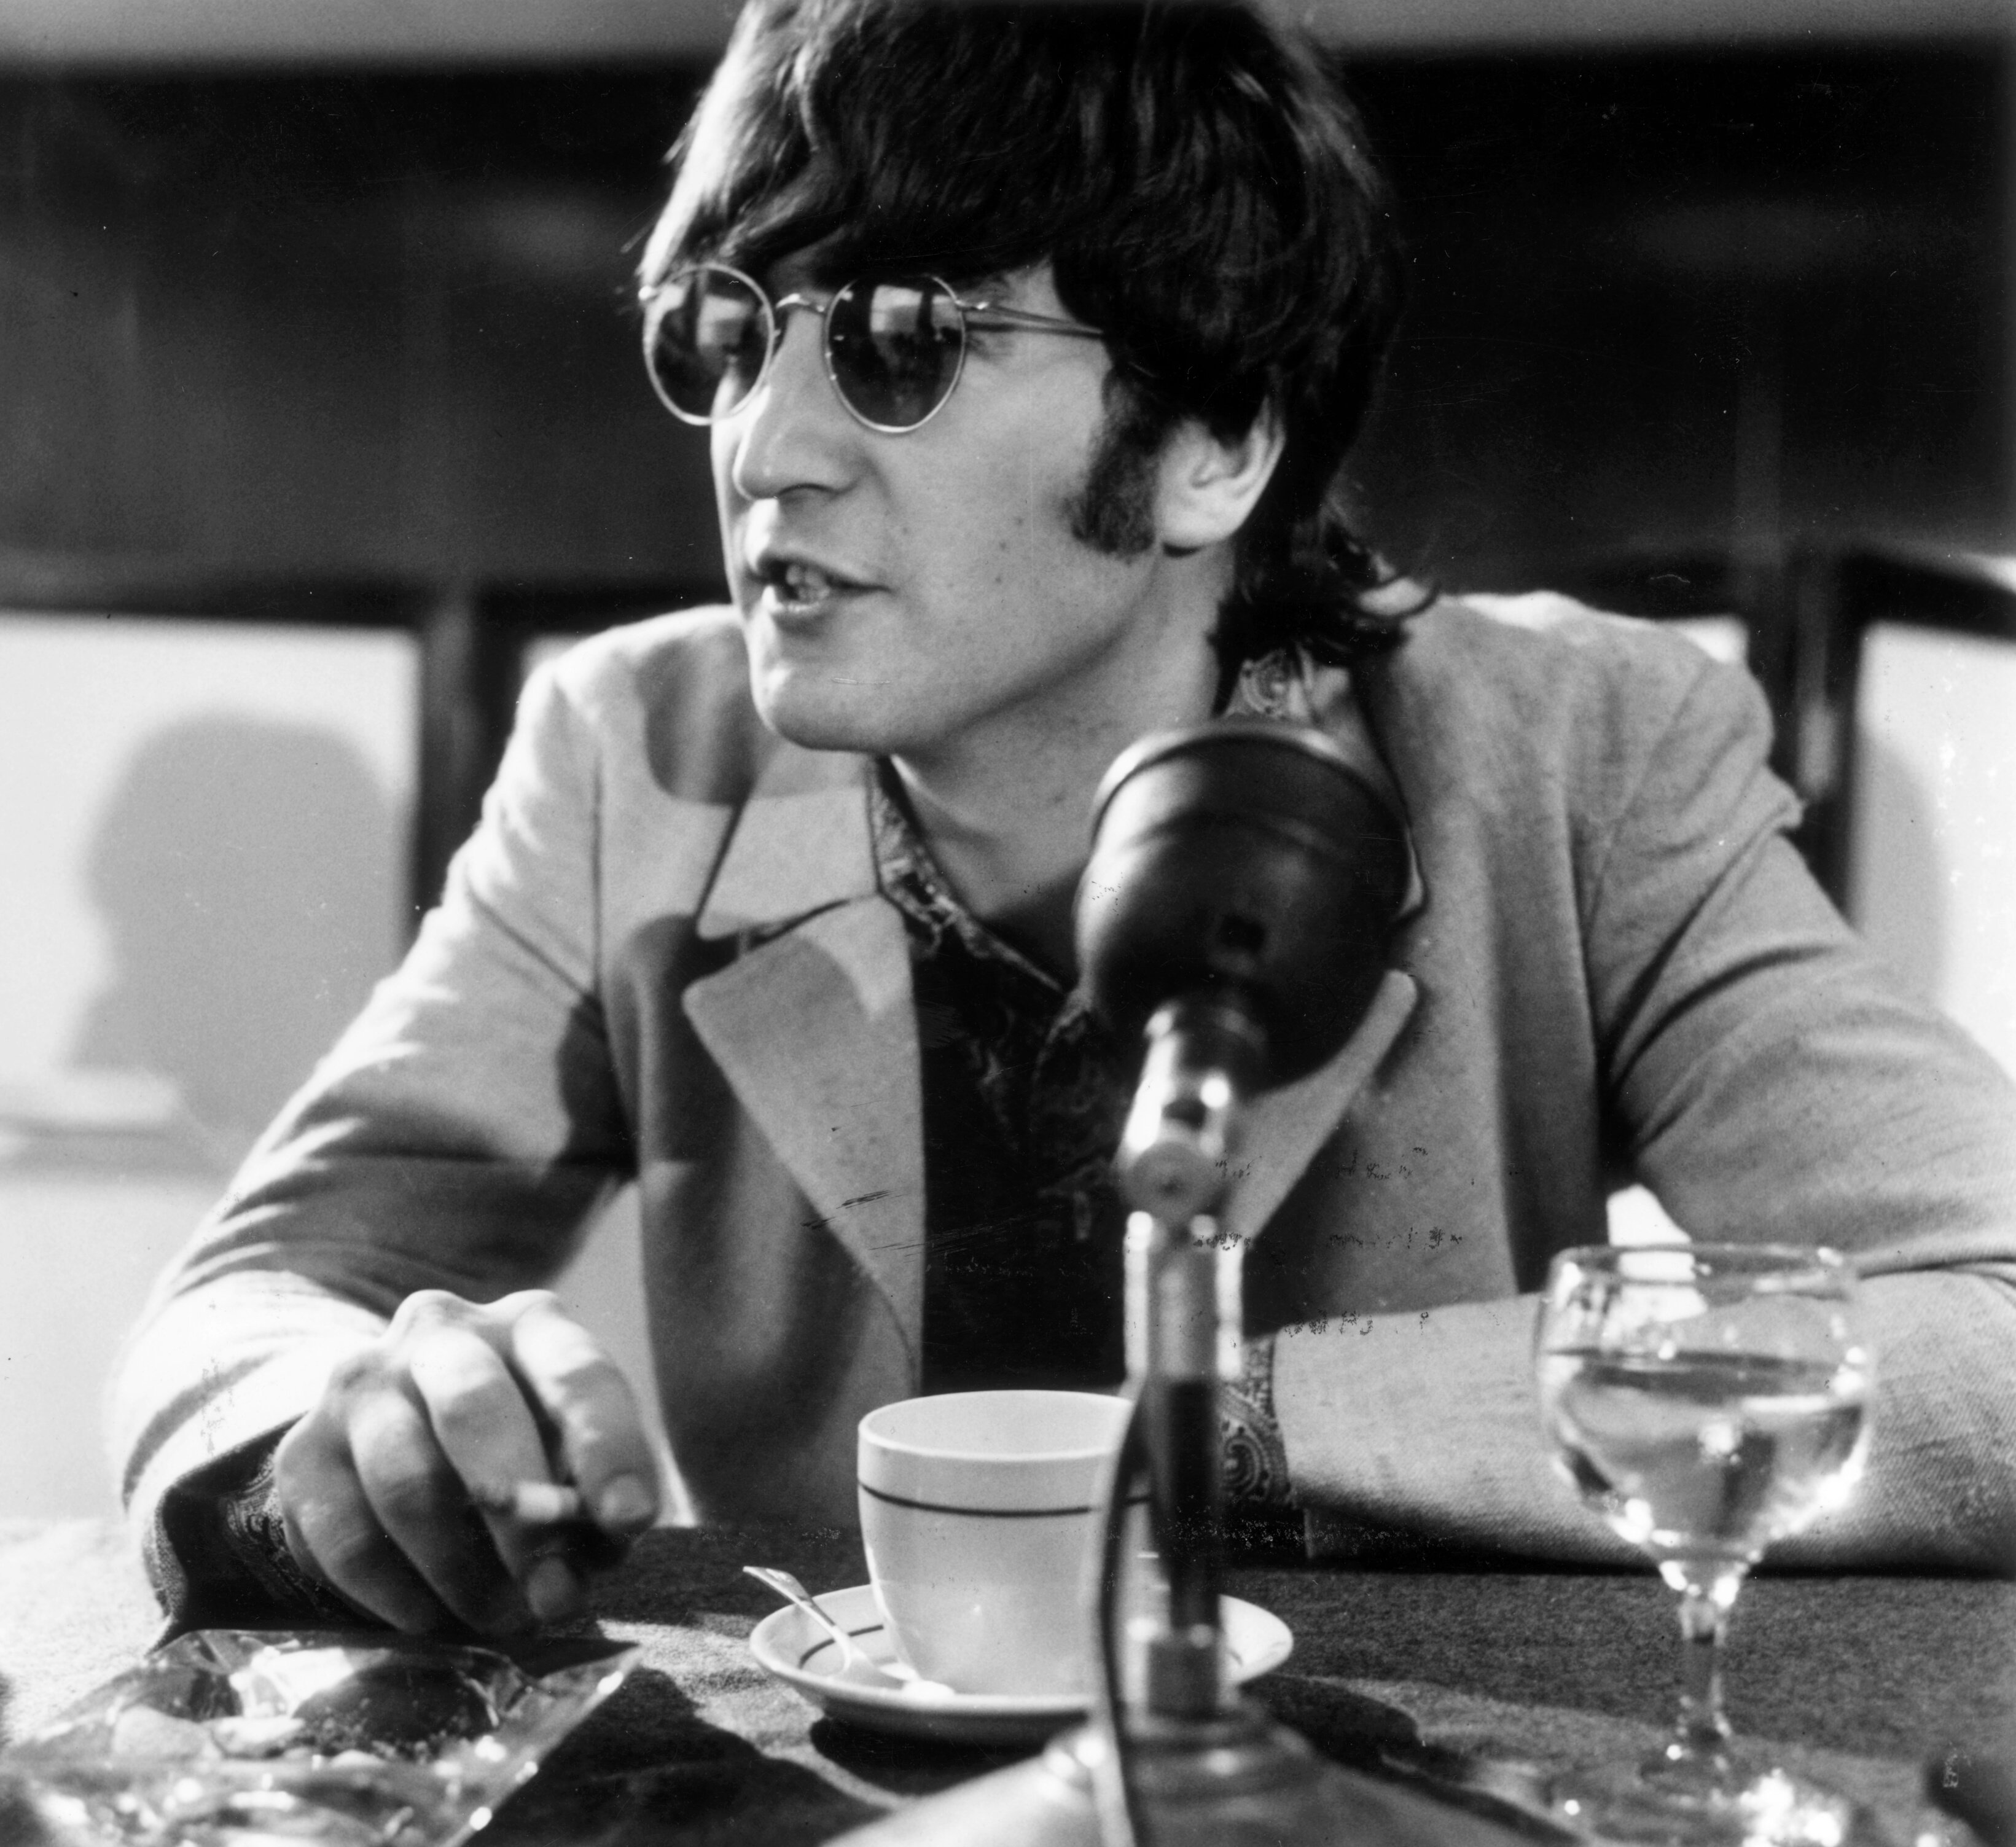 "Imagine" singer John Lennon wearing glasses